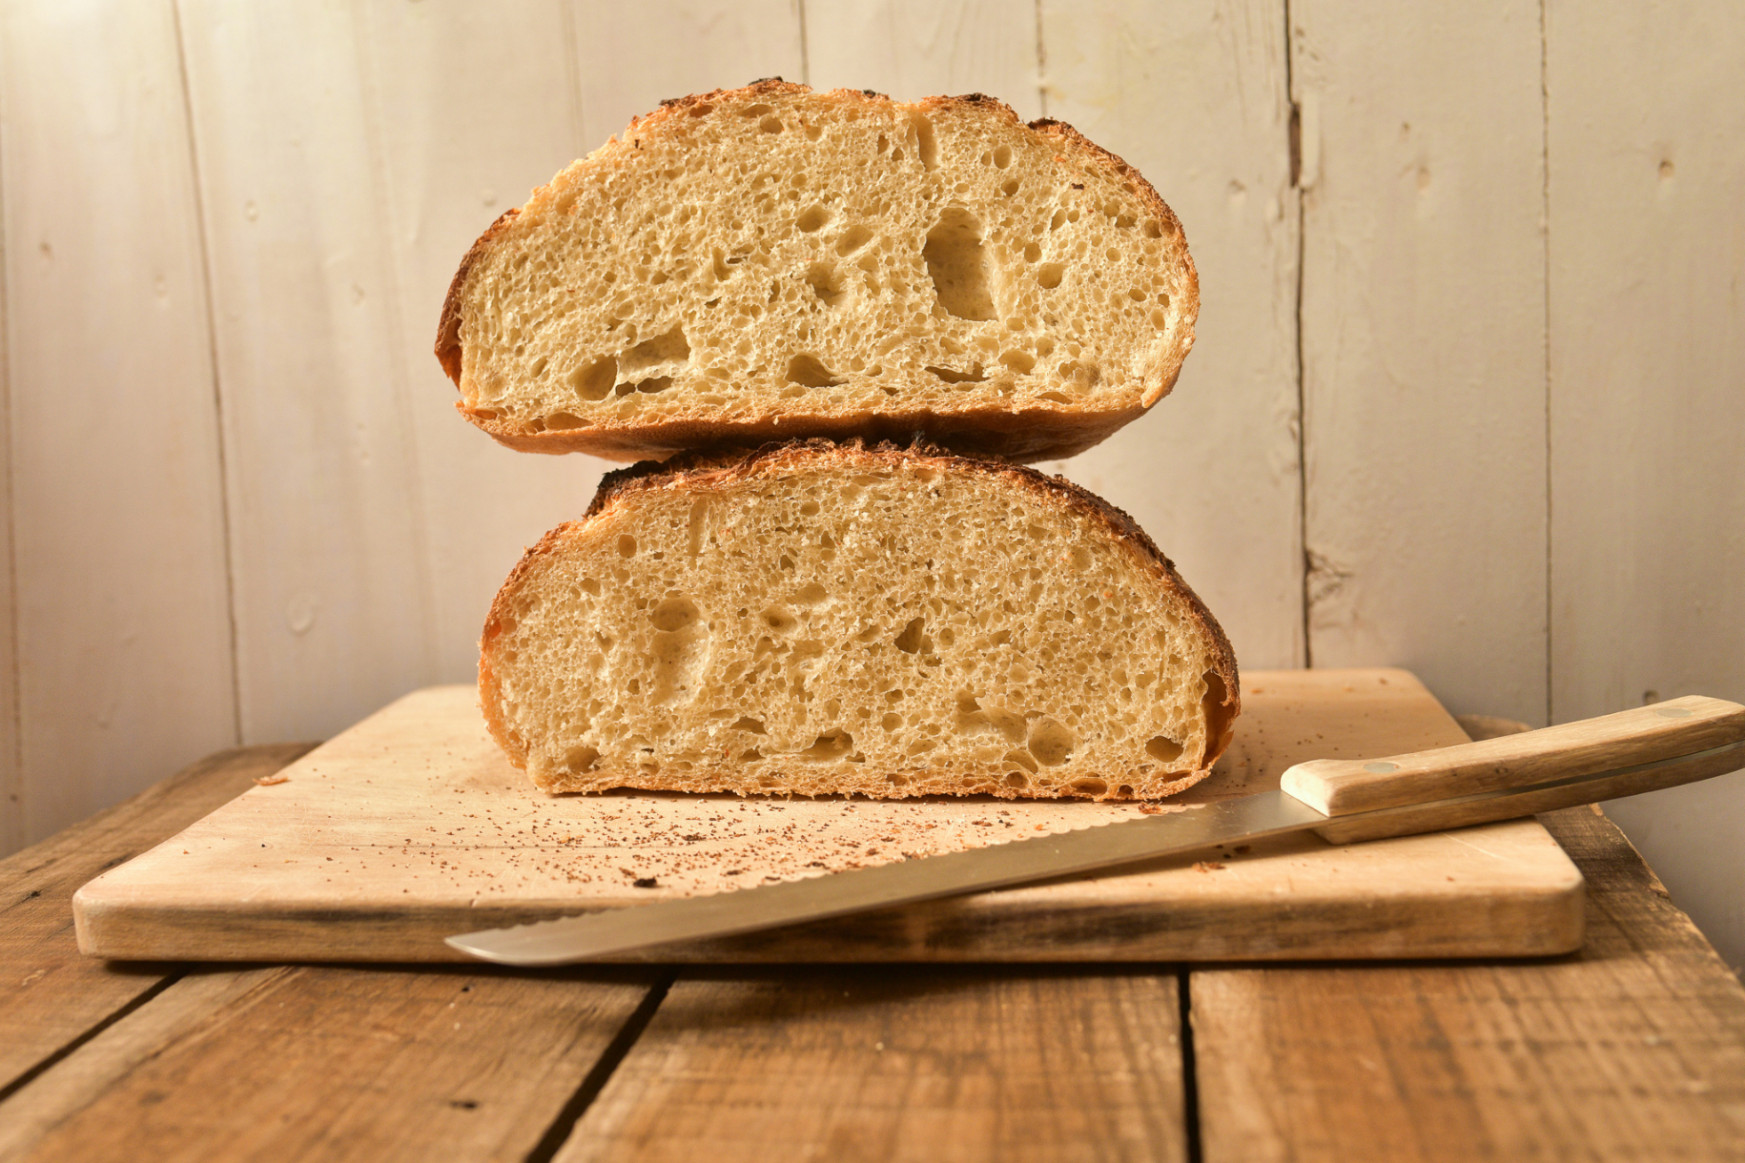 A rossz kenyér is egyre drágább, süssünk inkább otthon olcsóbbat, jobbat, egyszerűen!